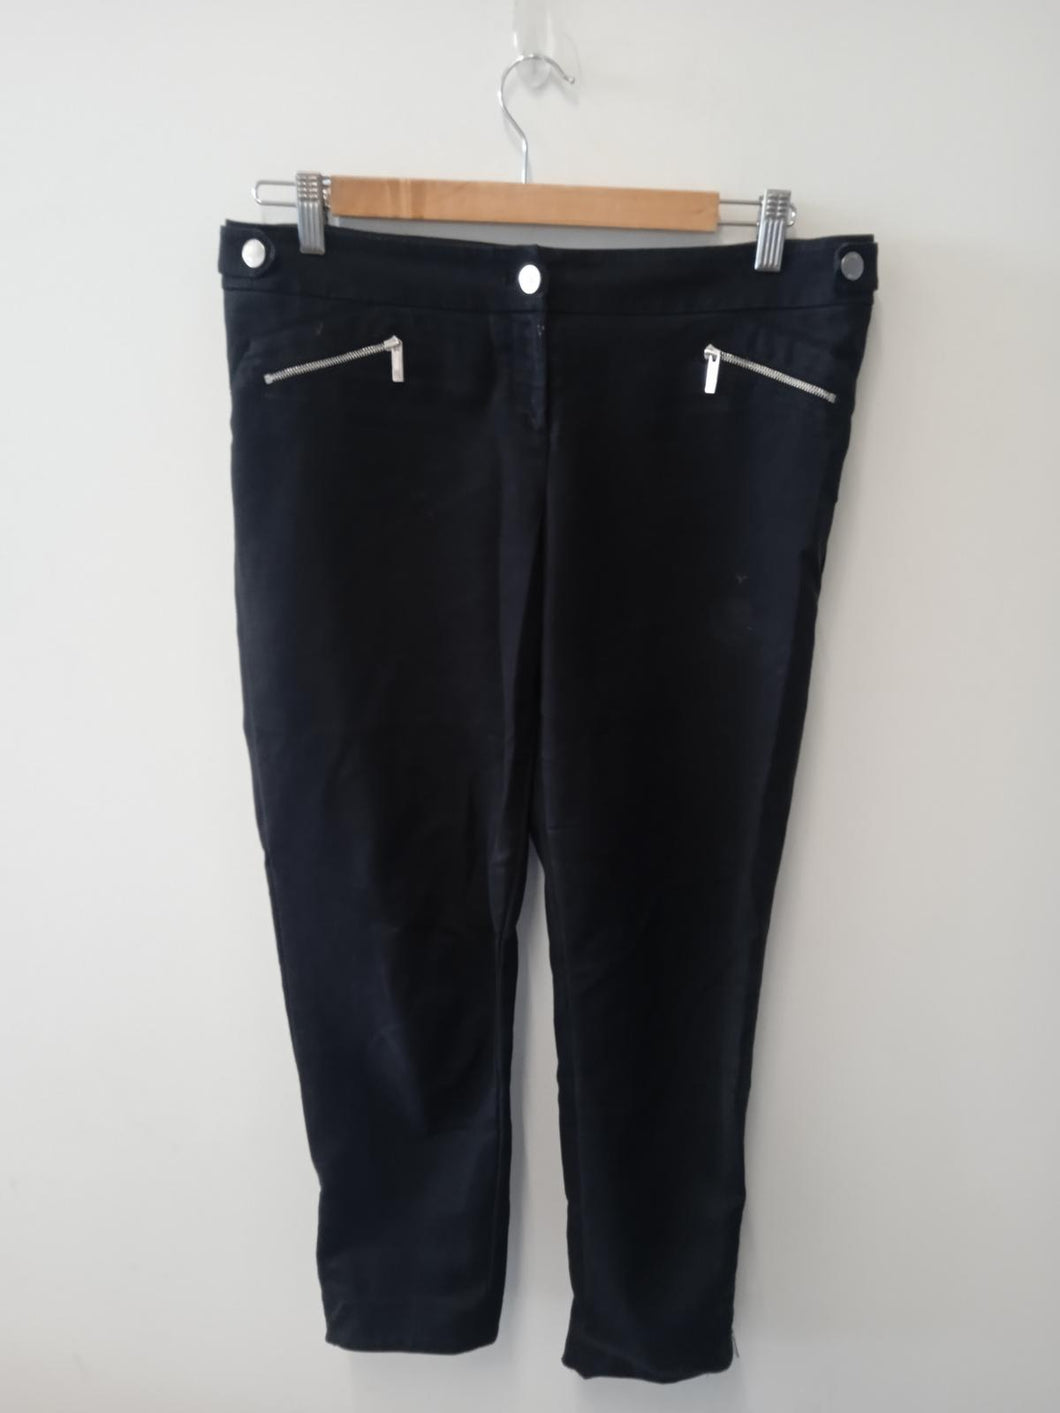 KAREN MILLEN Ladies Black Zip Fly Trousers Size UK12